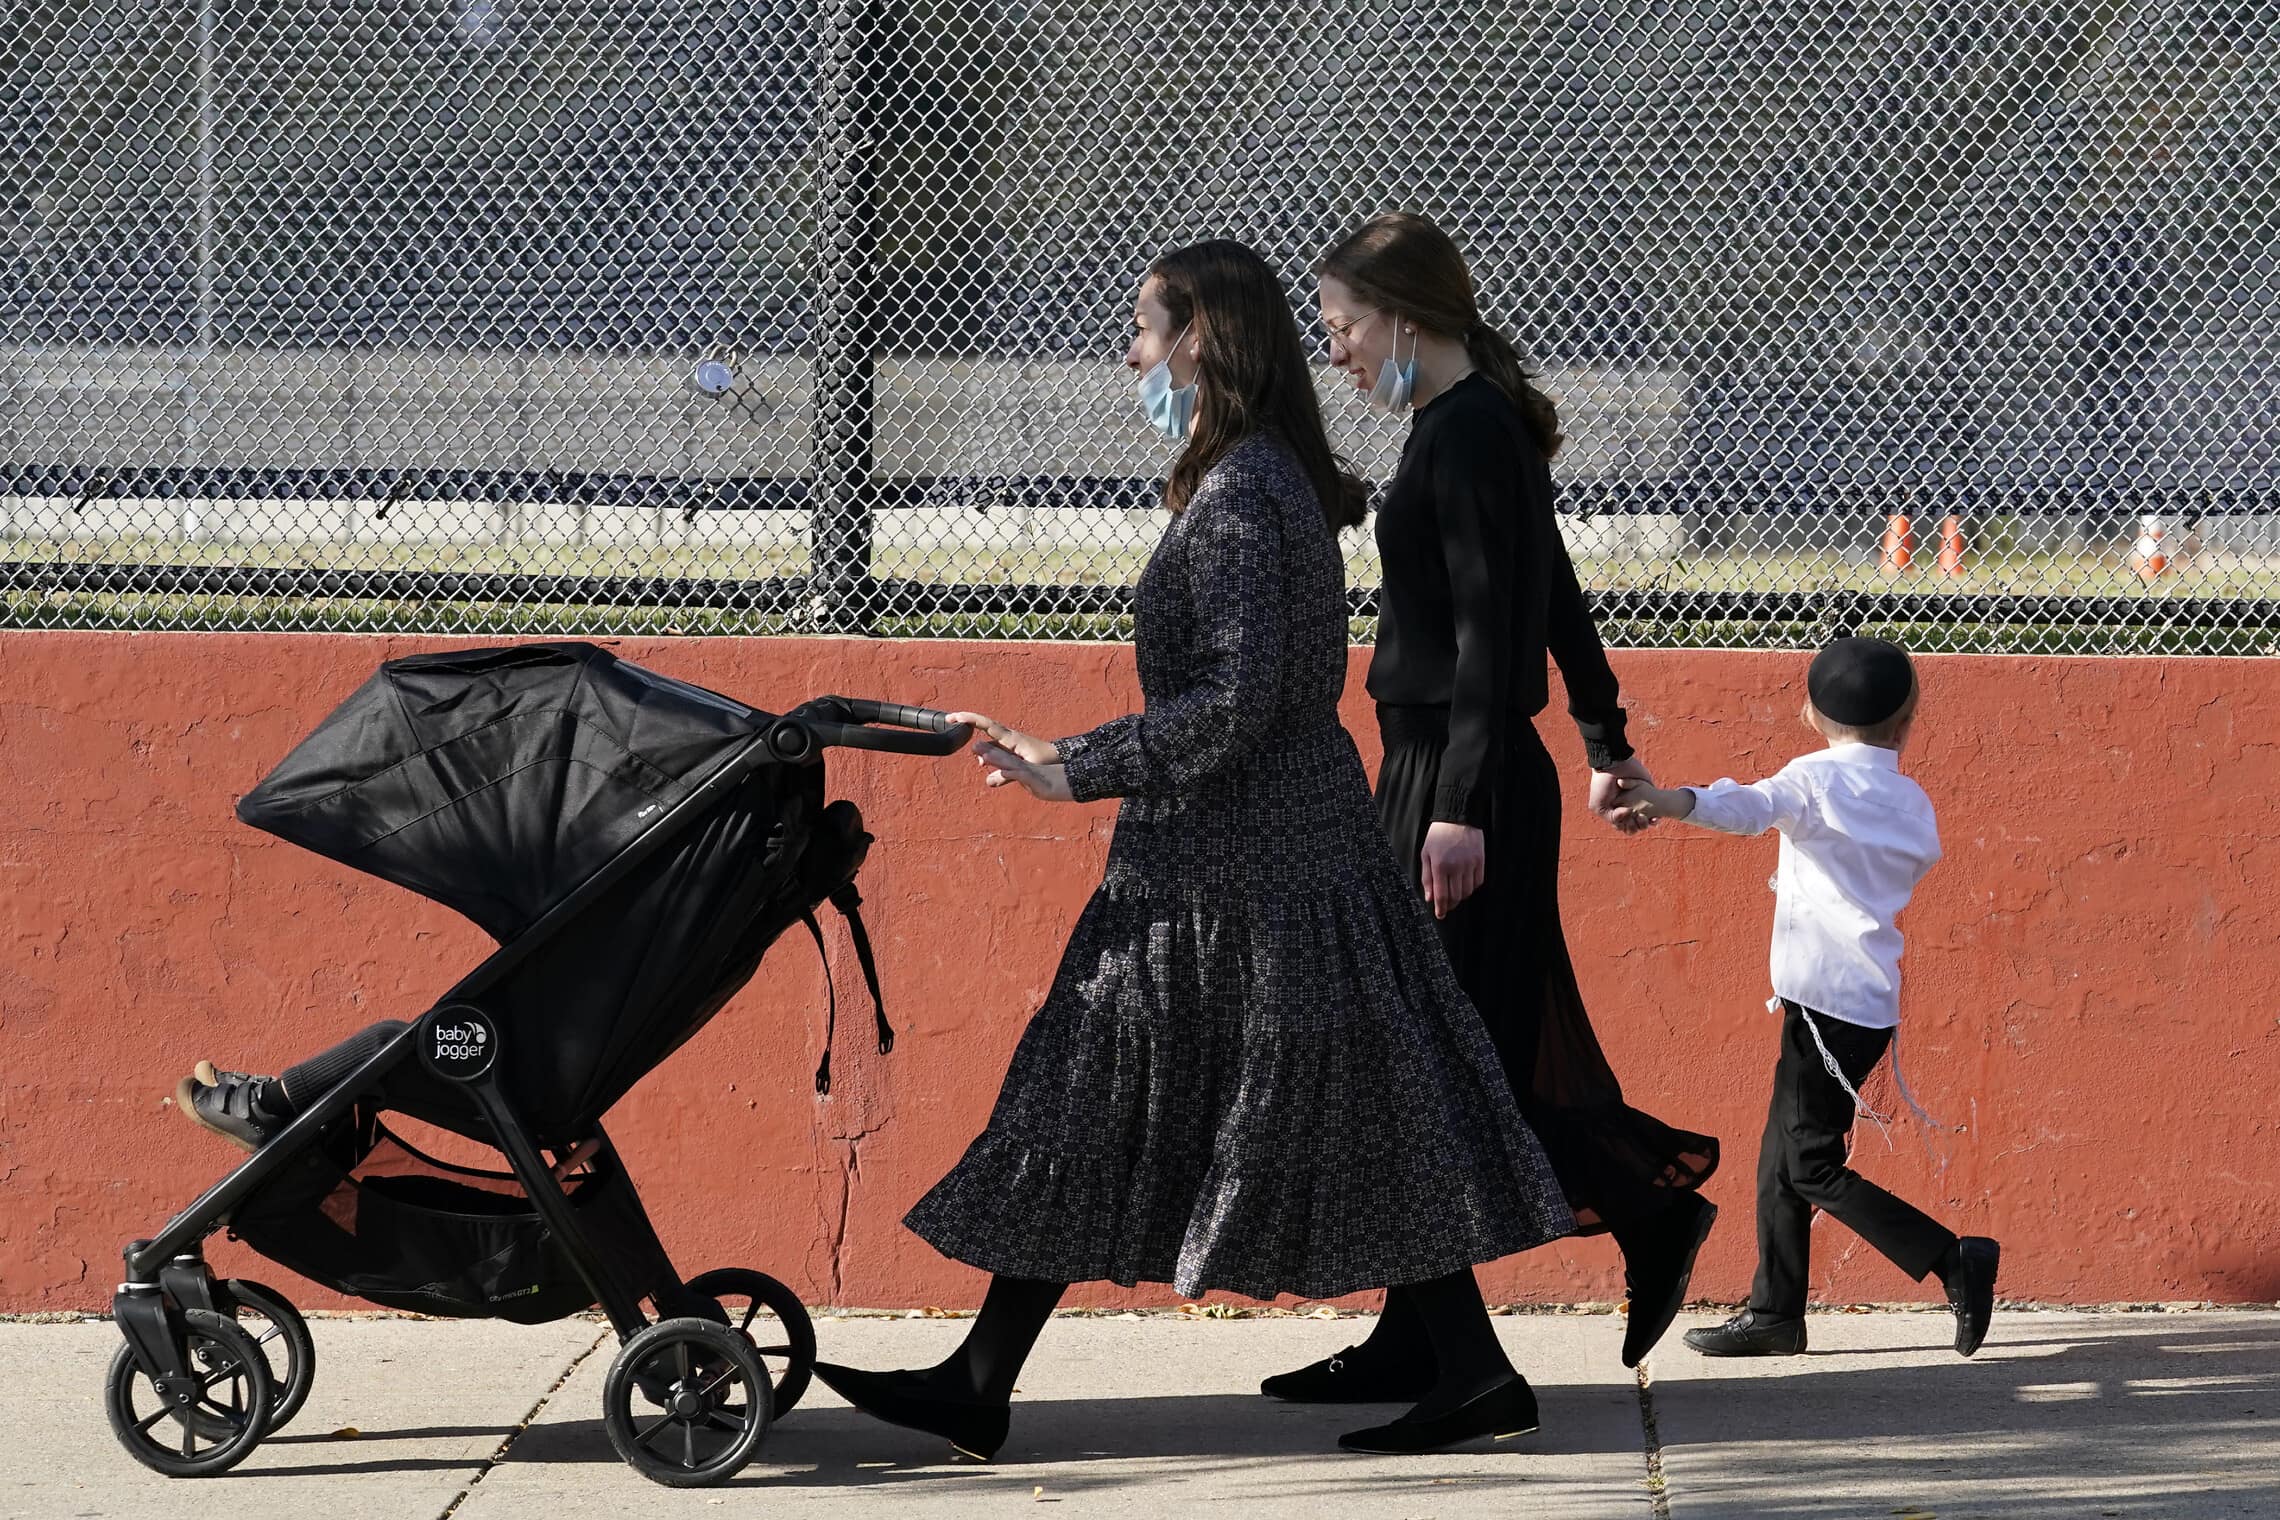 נשים וילדים מהקהילה החרדית בבורו פארק, ברוקלין, אוקטובר 2020. למצולמים אין קשר לנאמר בכתבה (צילום: AP Photo/Kathy Willens)